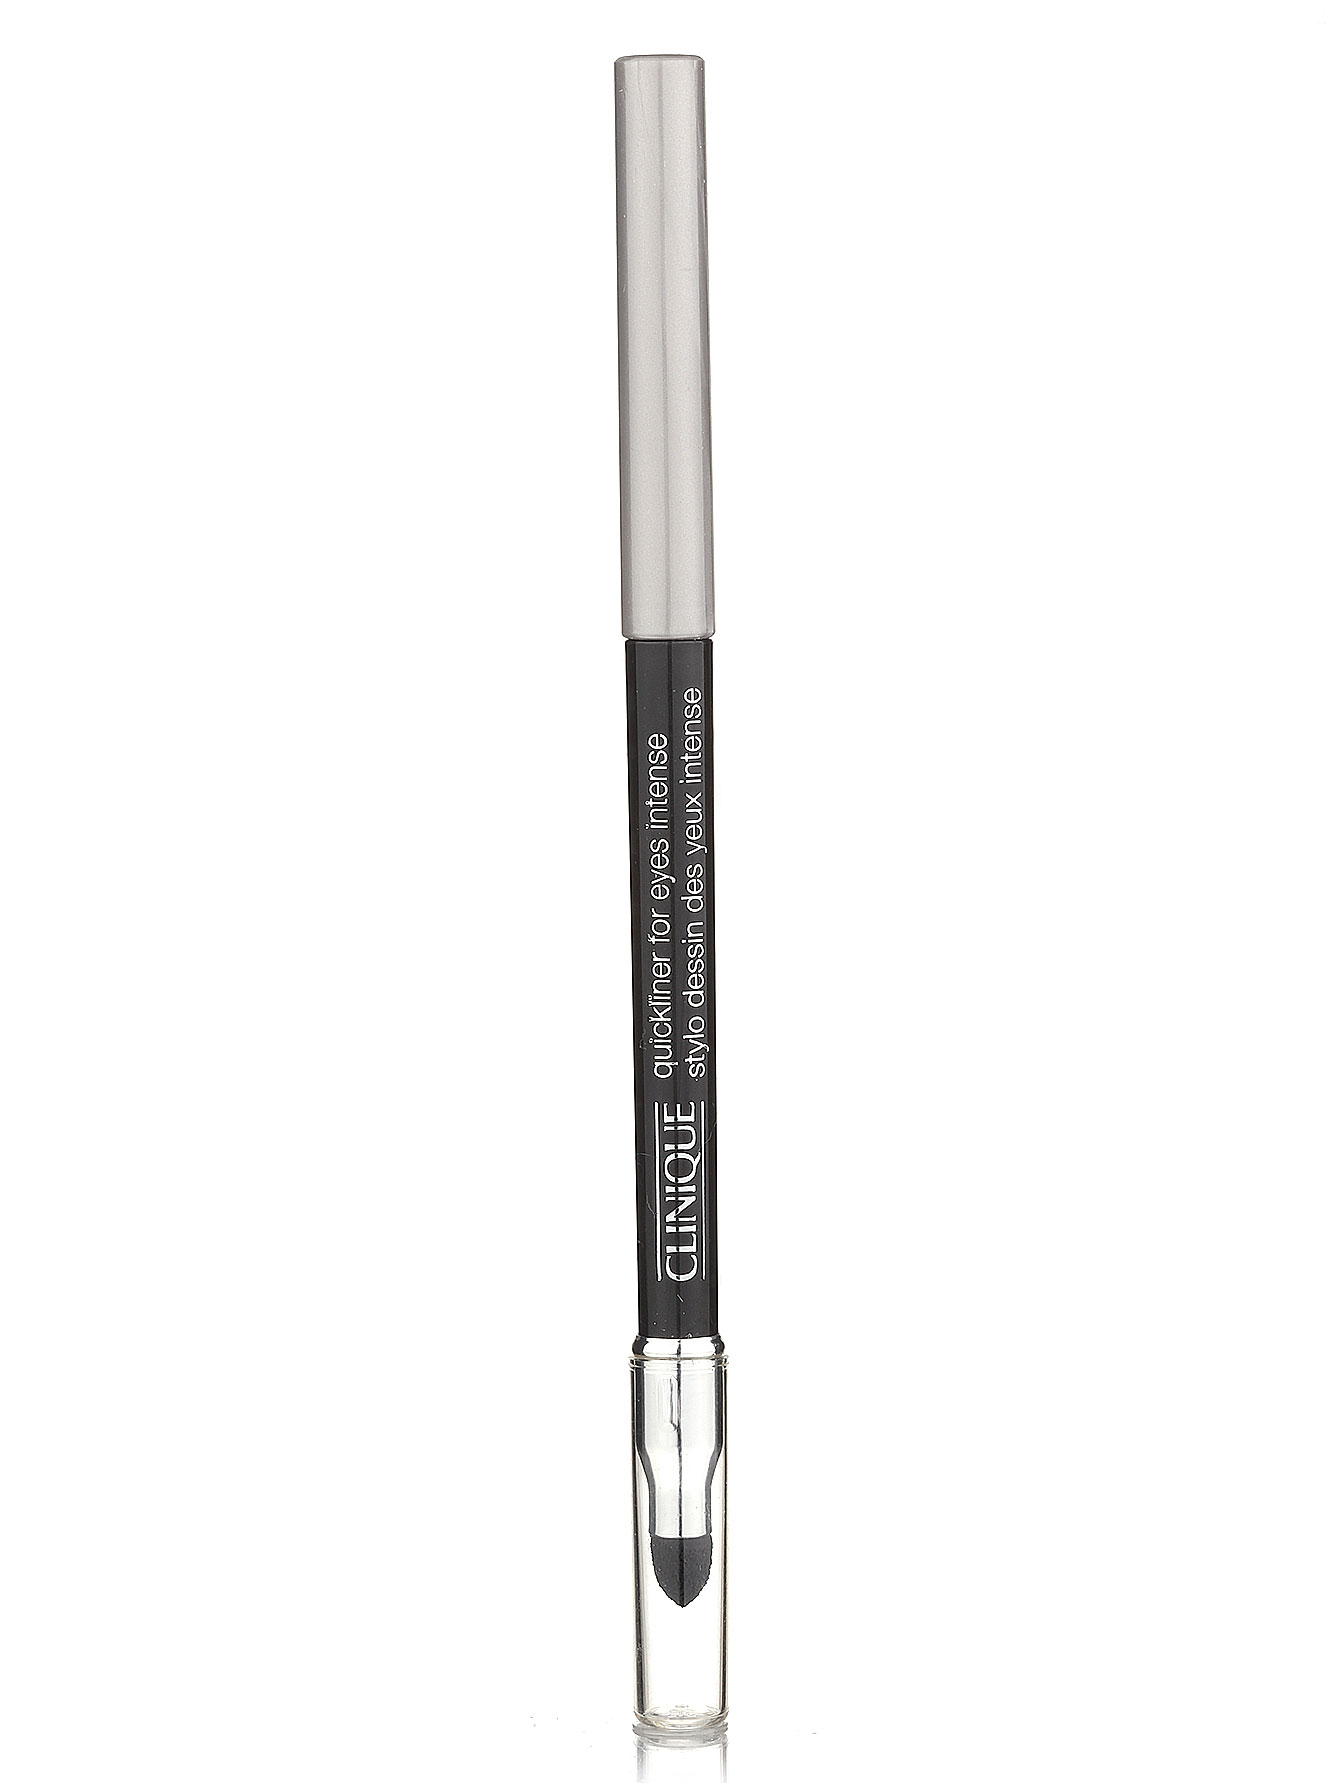  Автоматический карандаш для глаз - Intense Carcoal, Quickliner - Модель Верх-Низ